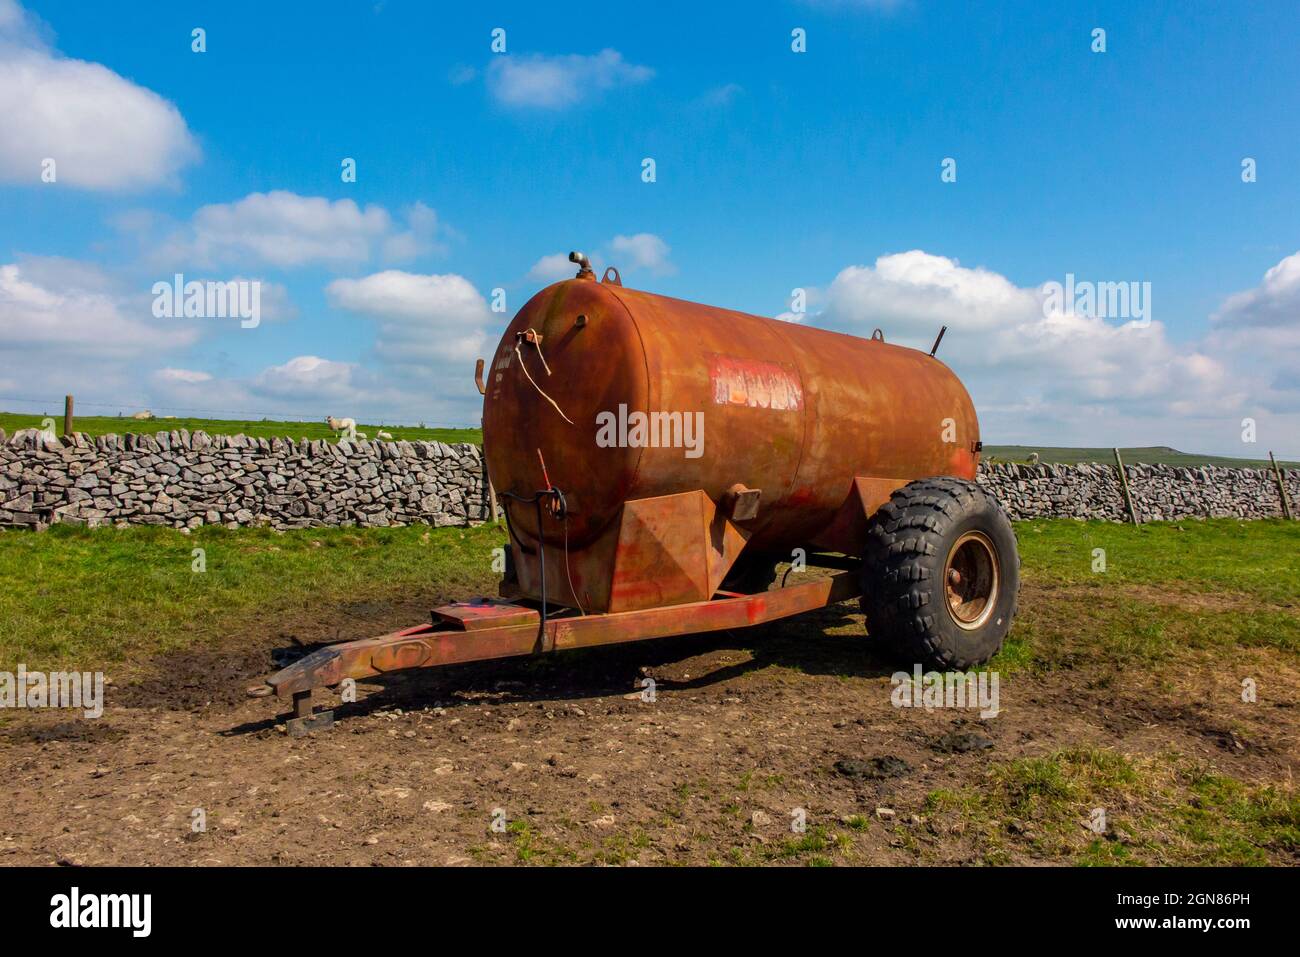 Tracteur-citerne utilisé pour le transport de liquide stationné dans un champ à côté d'un mur en pierre sèche dans le Derbyshire Peak District Angleterre Banque D'Images